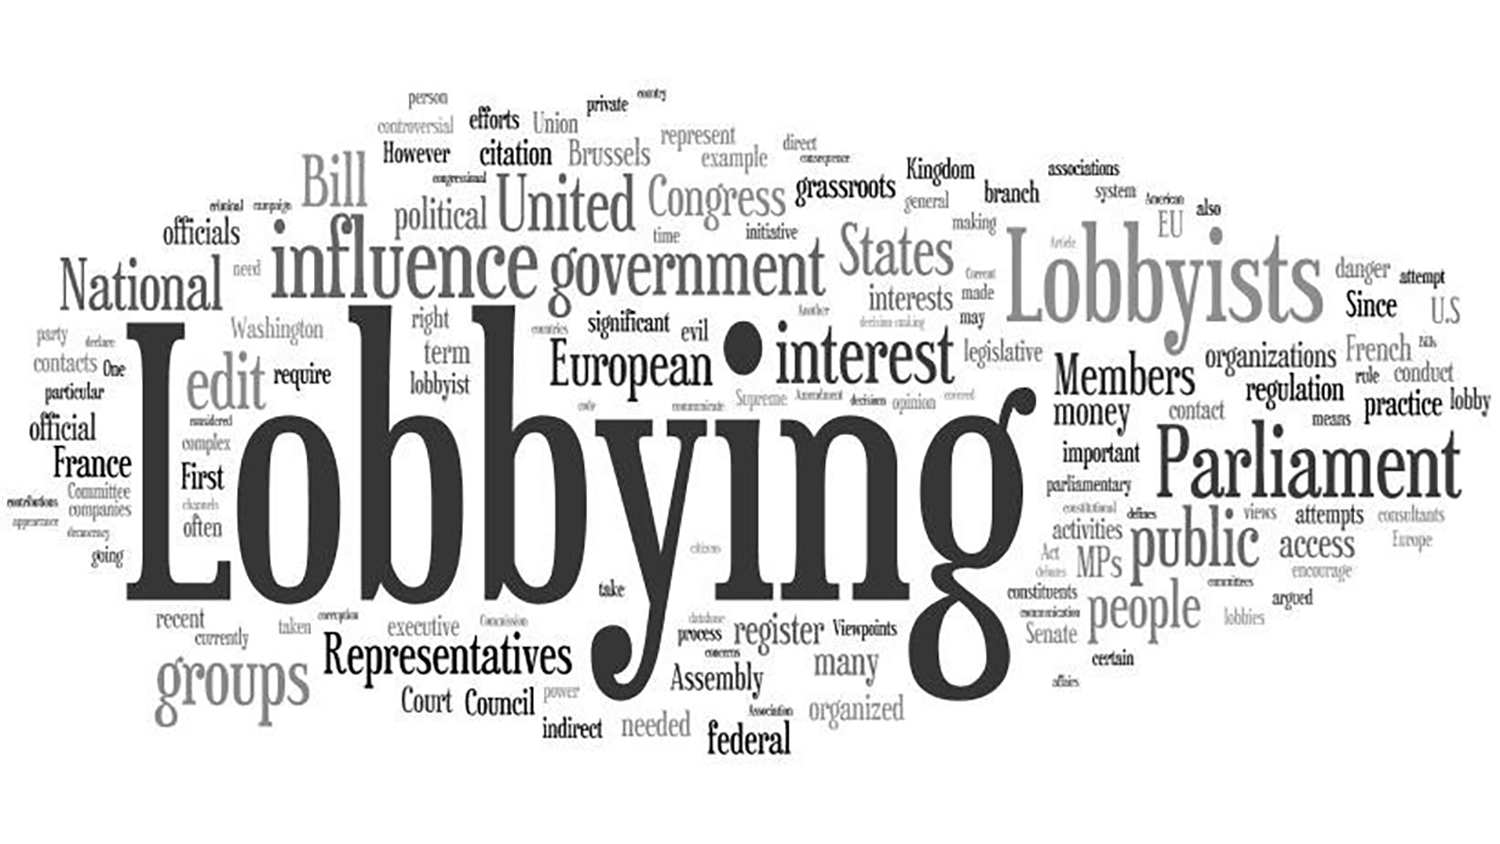 Alle origini del lobbying: da Washington a Bruxelles